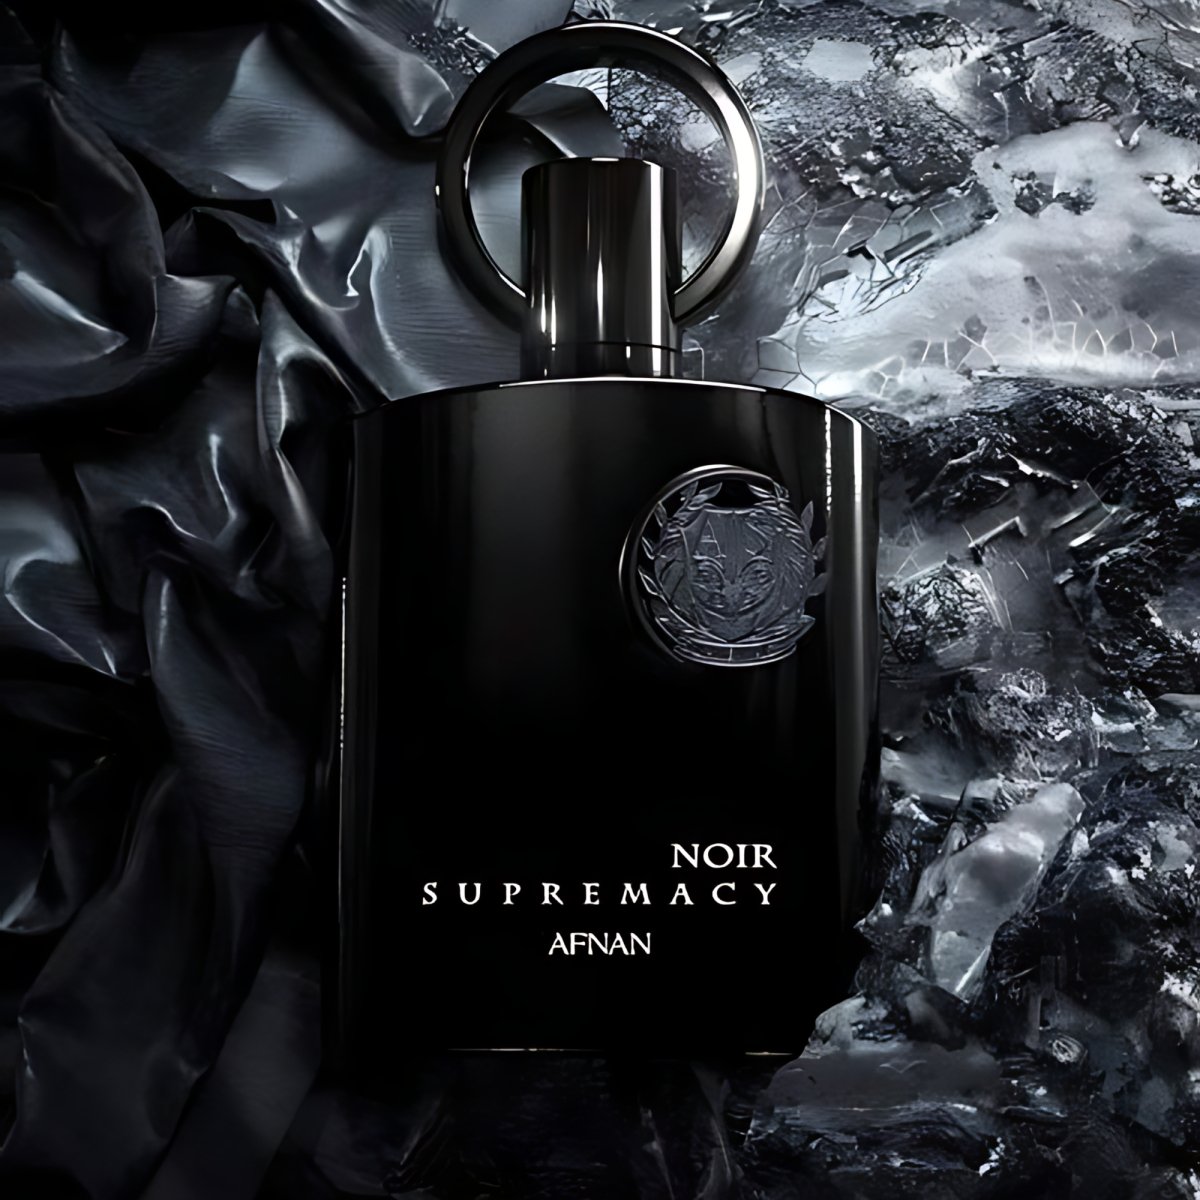 Supremacy Noir - Afnan - 3.4 oz - Eau de Parfum - Fragrance - 6290171001614 - Fragrance